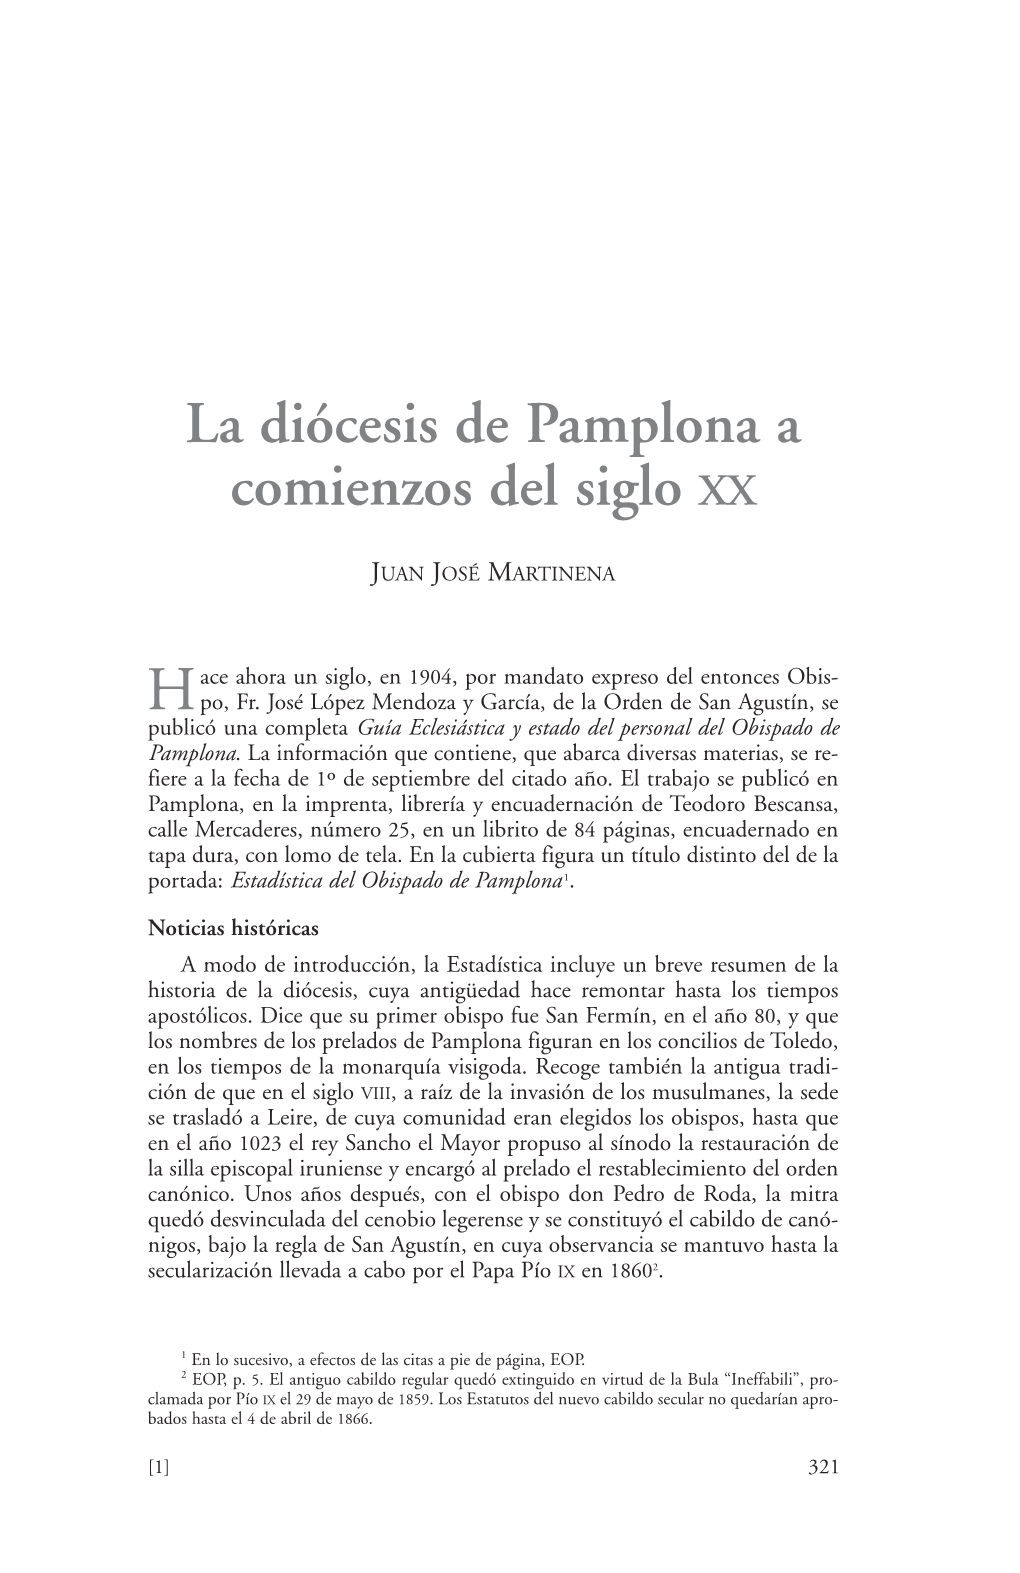 La Diócesis De Pamplona a Comienzos Del Siglo XX